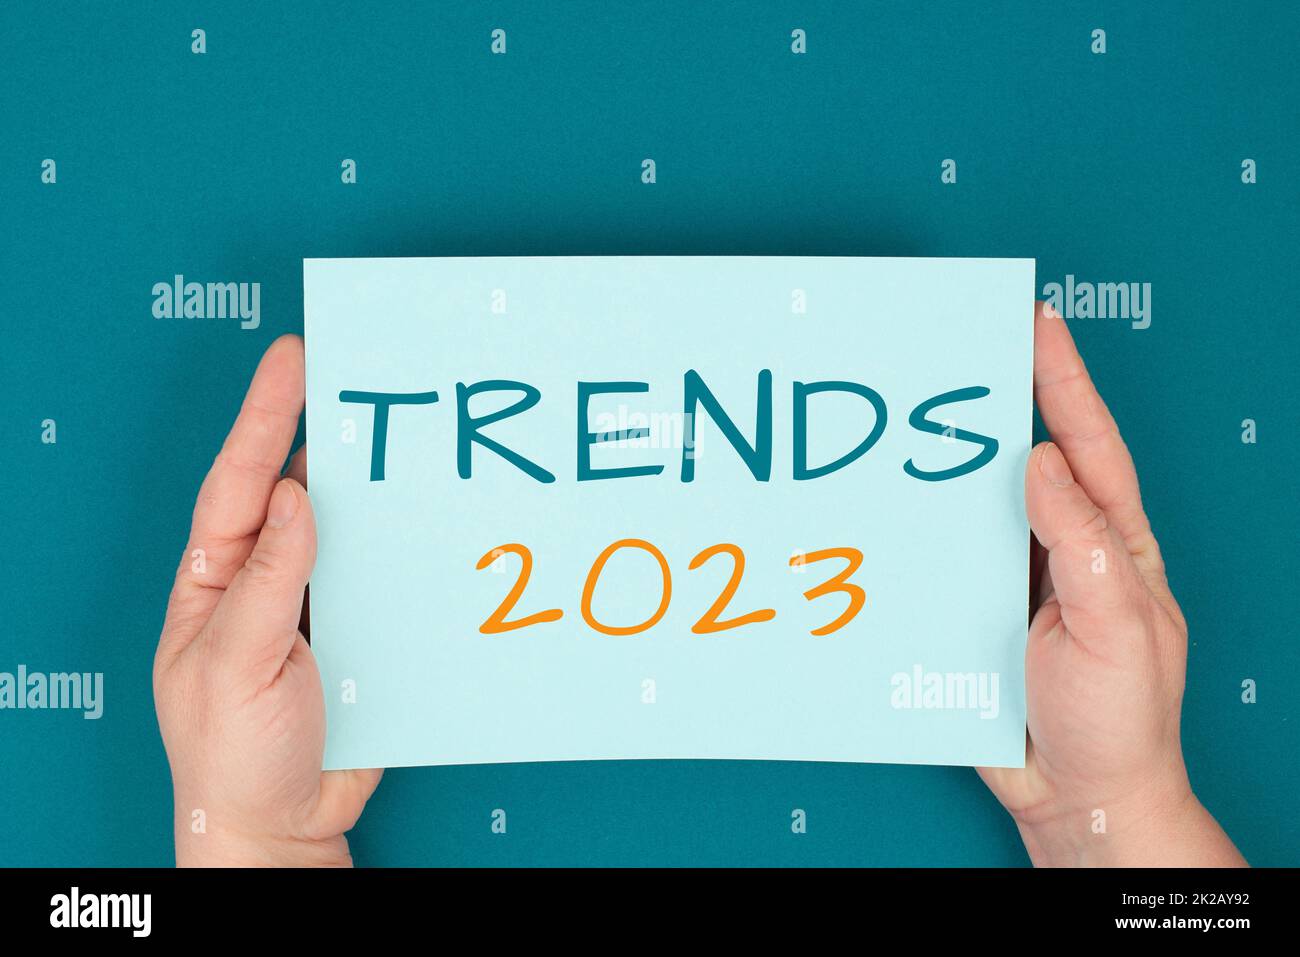 Trends 2023 steht auf einem Papier, Hände halten das Zeichen, Kommunikation, Marketing, neue Konzepte, Benzin Hintergrund Stockfoto